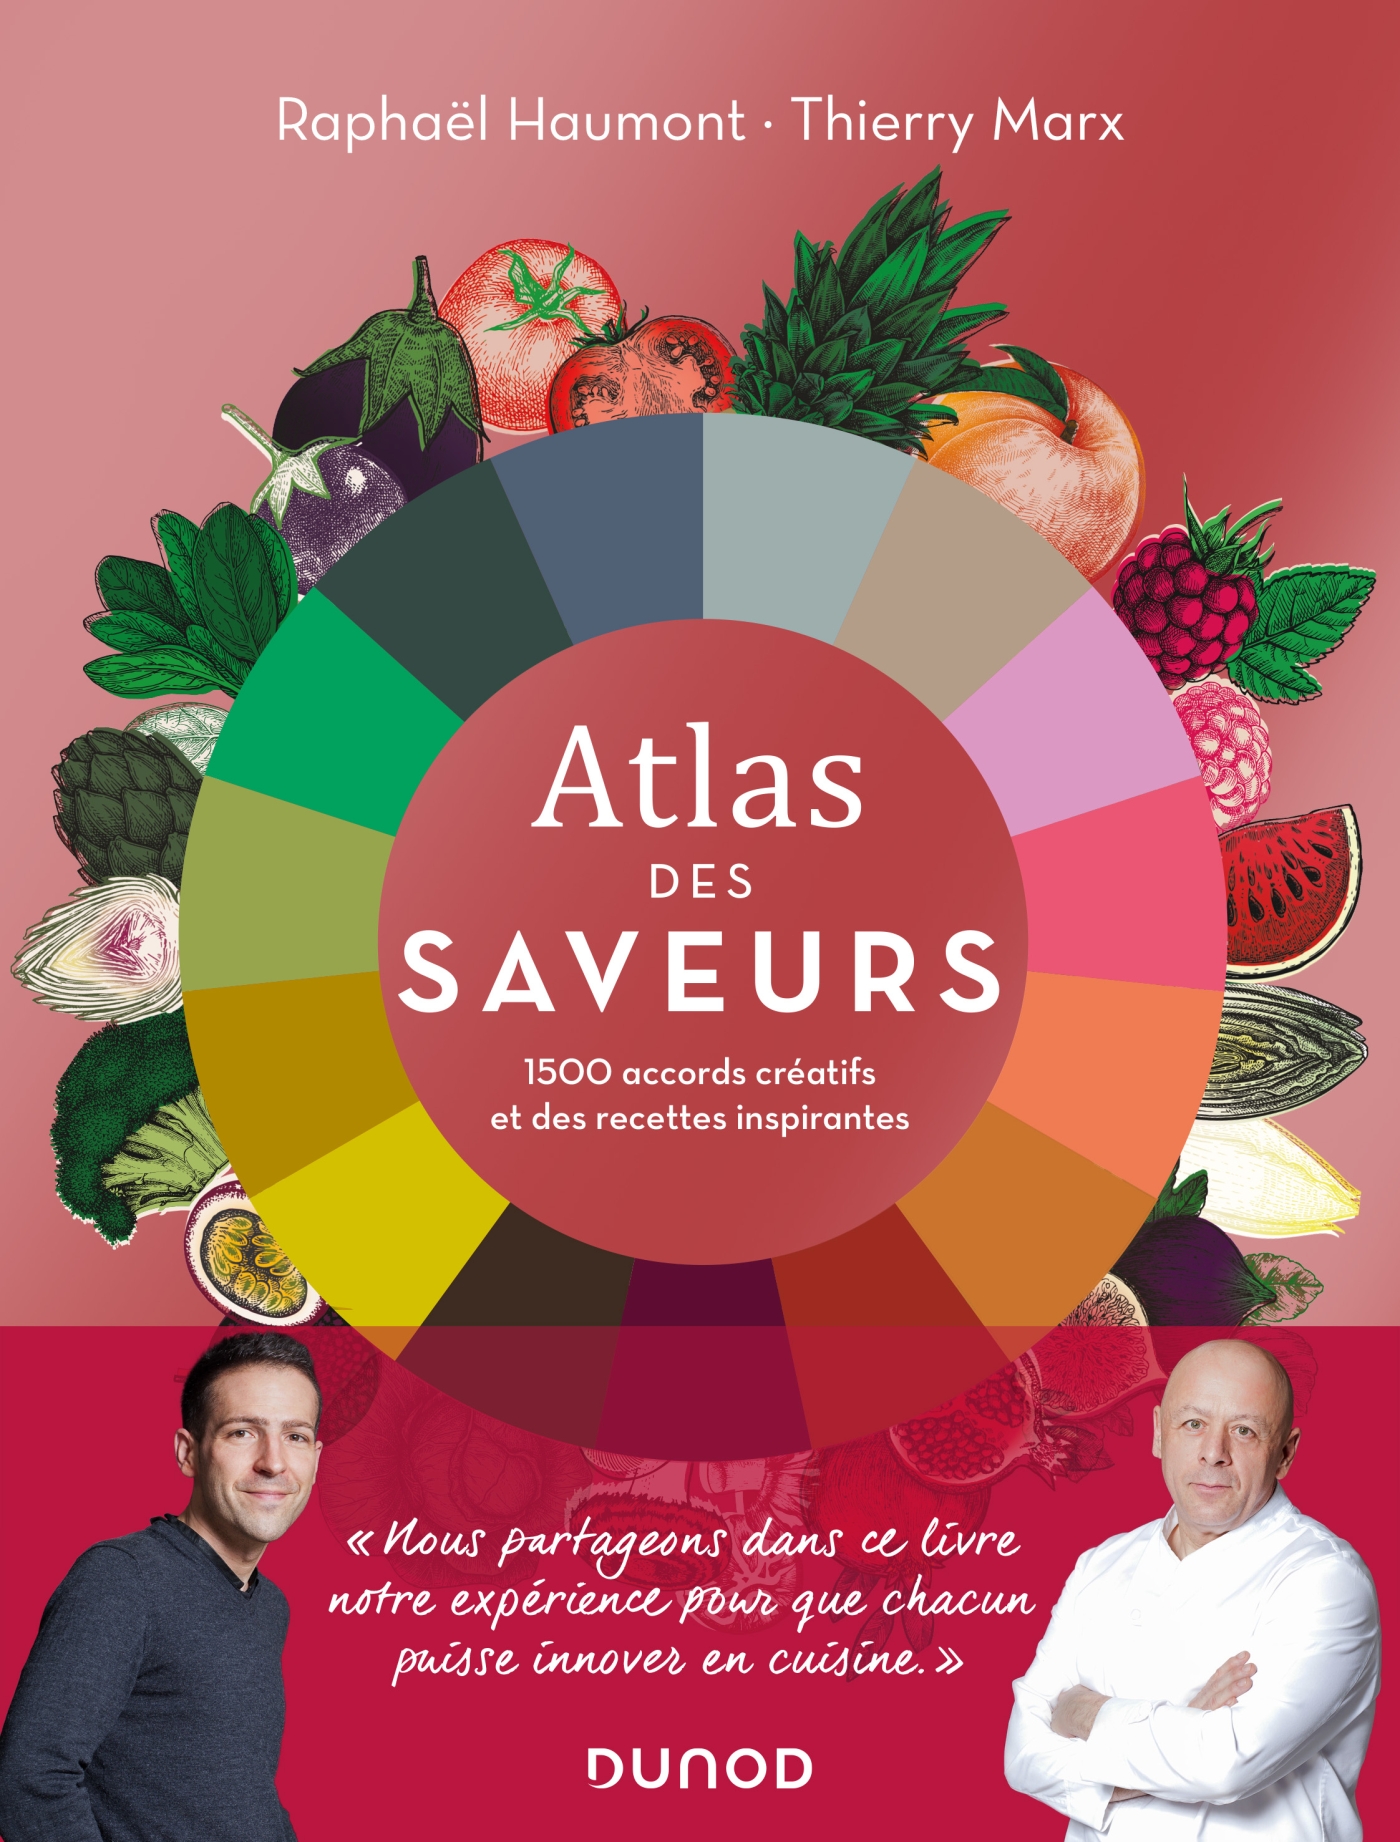 Thierry Marx et Raphaël Haumont présentent leur « Atlas des Saveurs »